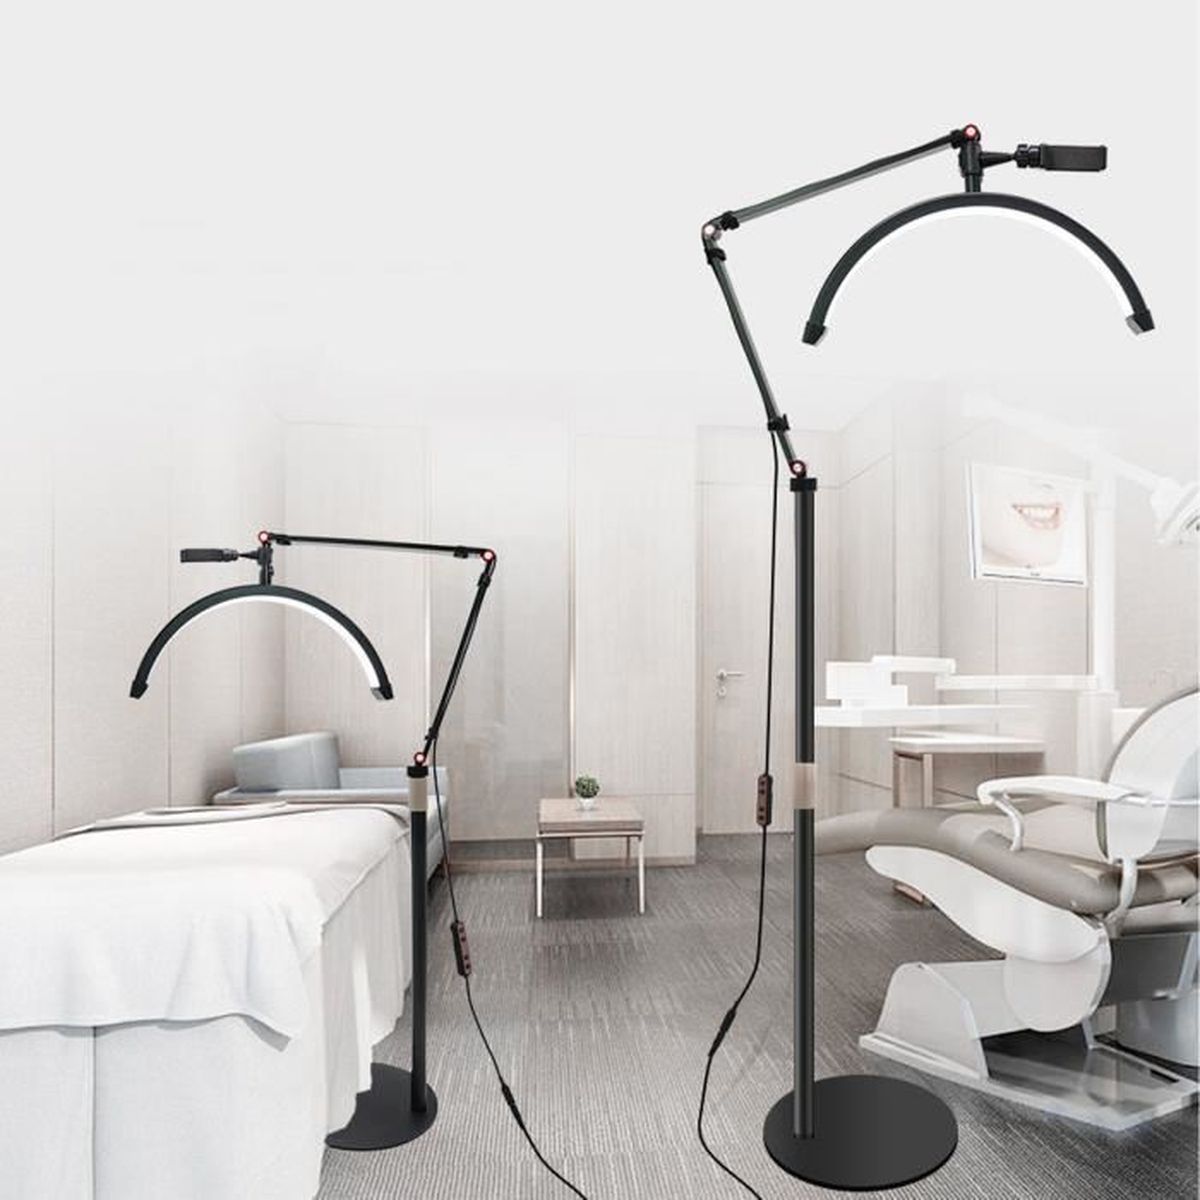 7w Lampe à cils Extension de cils Lumière Led Clip Sur Lampe Usb Eye-care  Book Light Home Bedroom